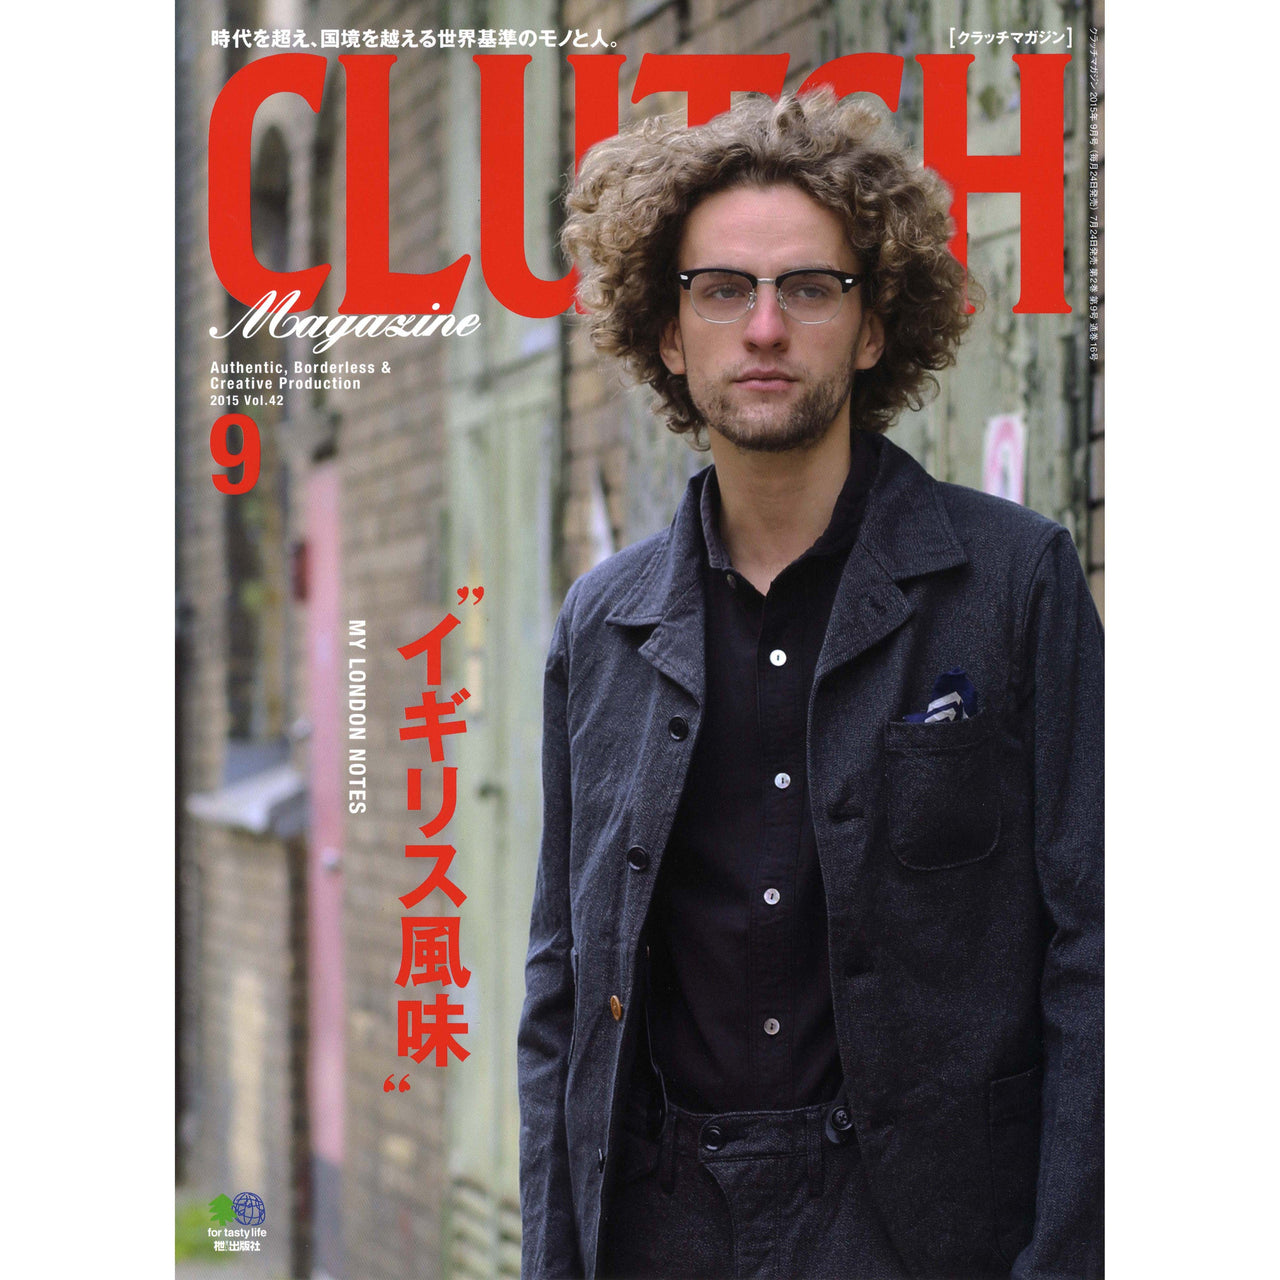 Clutch Magazine Vol.42-Clutch Cafe